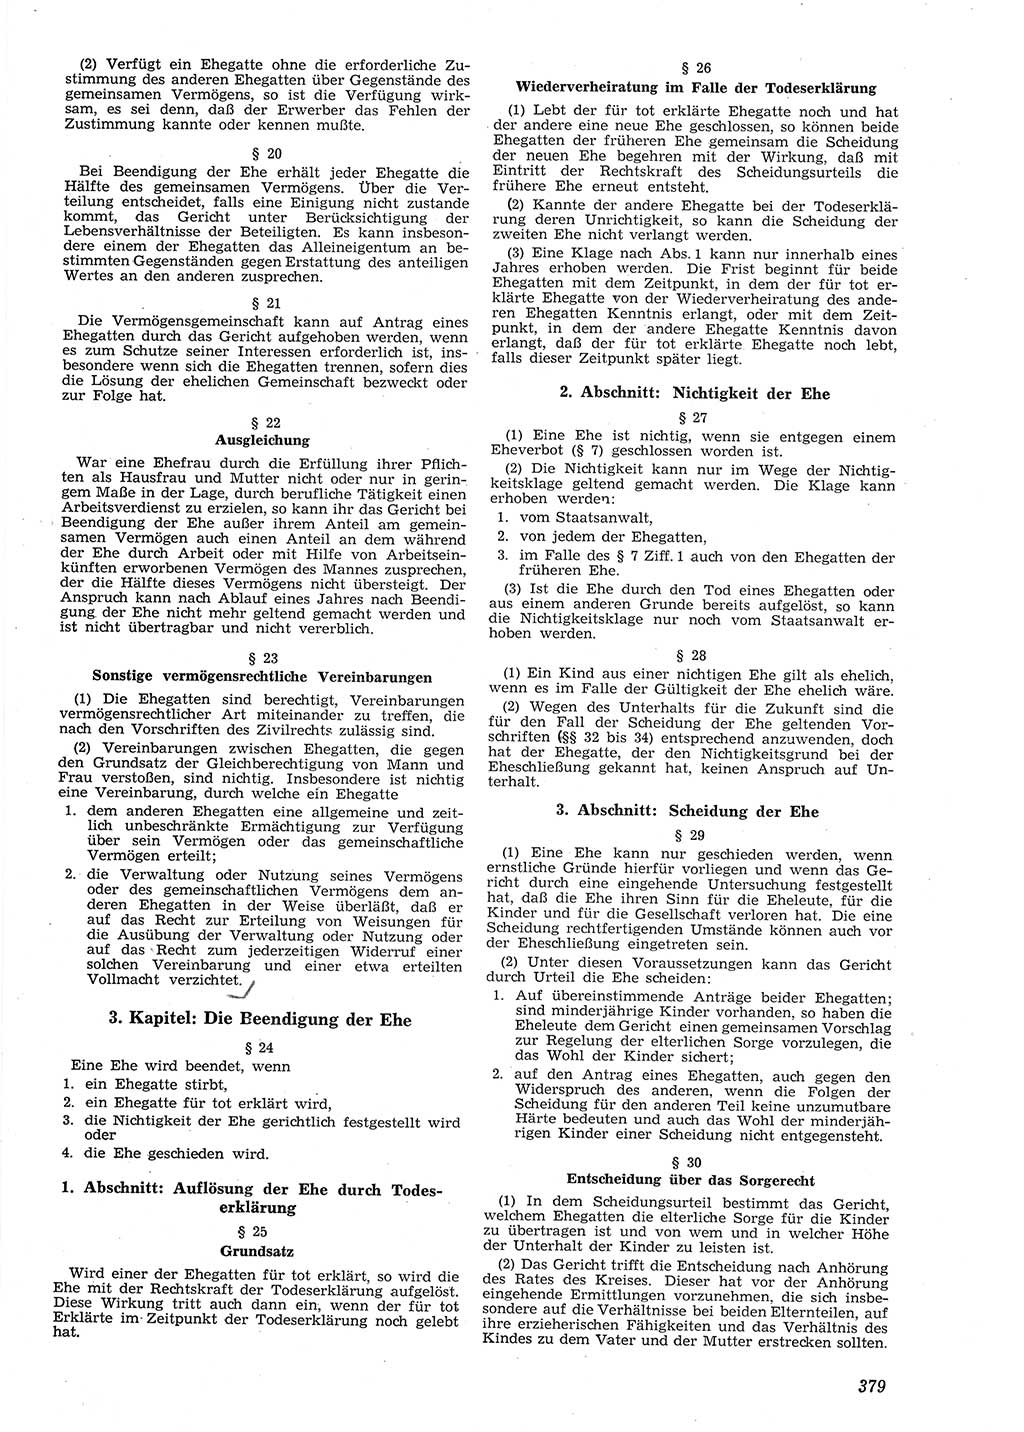 Neue Justiz (NJ), Zeitschrift für Recht und Rechtswissenschaft [Deutsche Demokratische Republik (DDR)], 8. Jahrgang 1954, Seite 379 (NJ DDR 1954, S. 379)